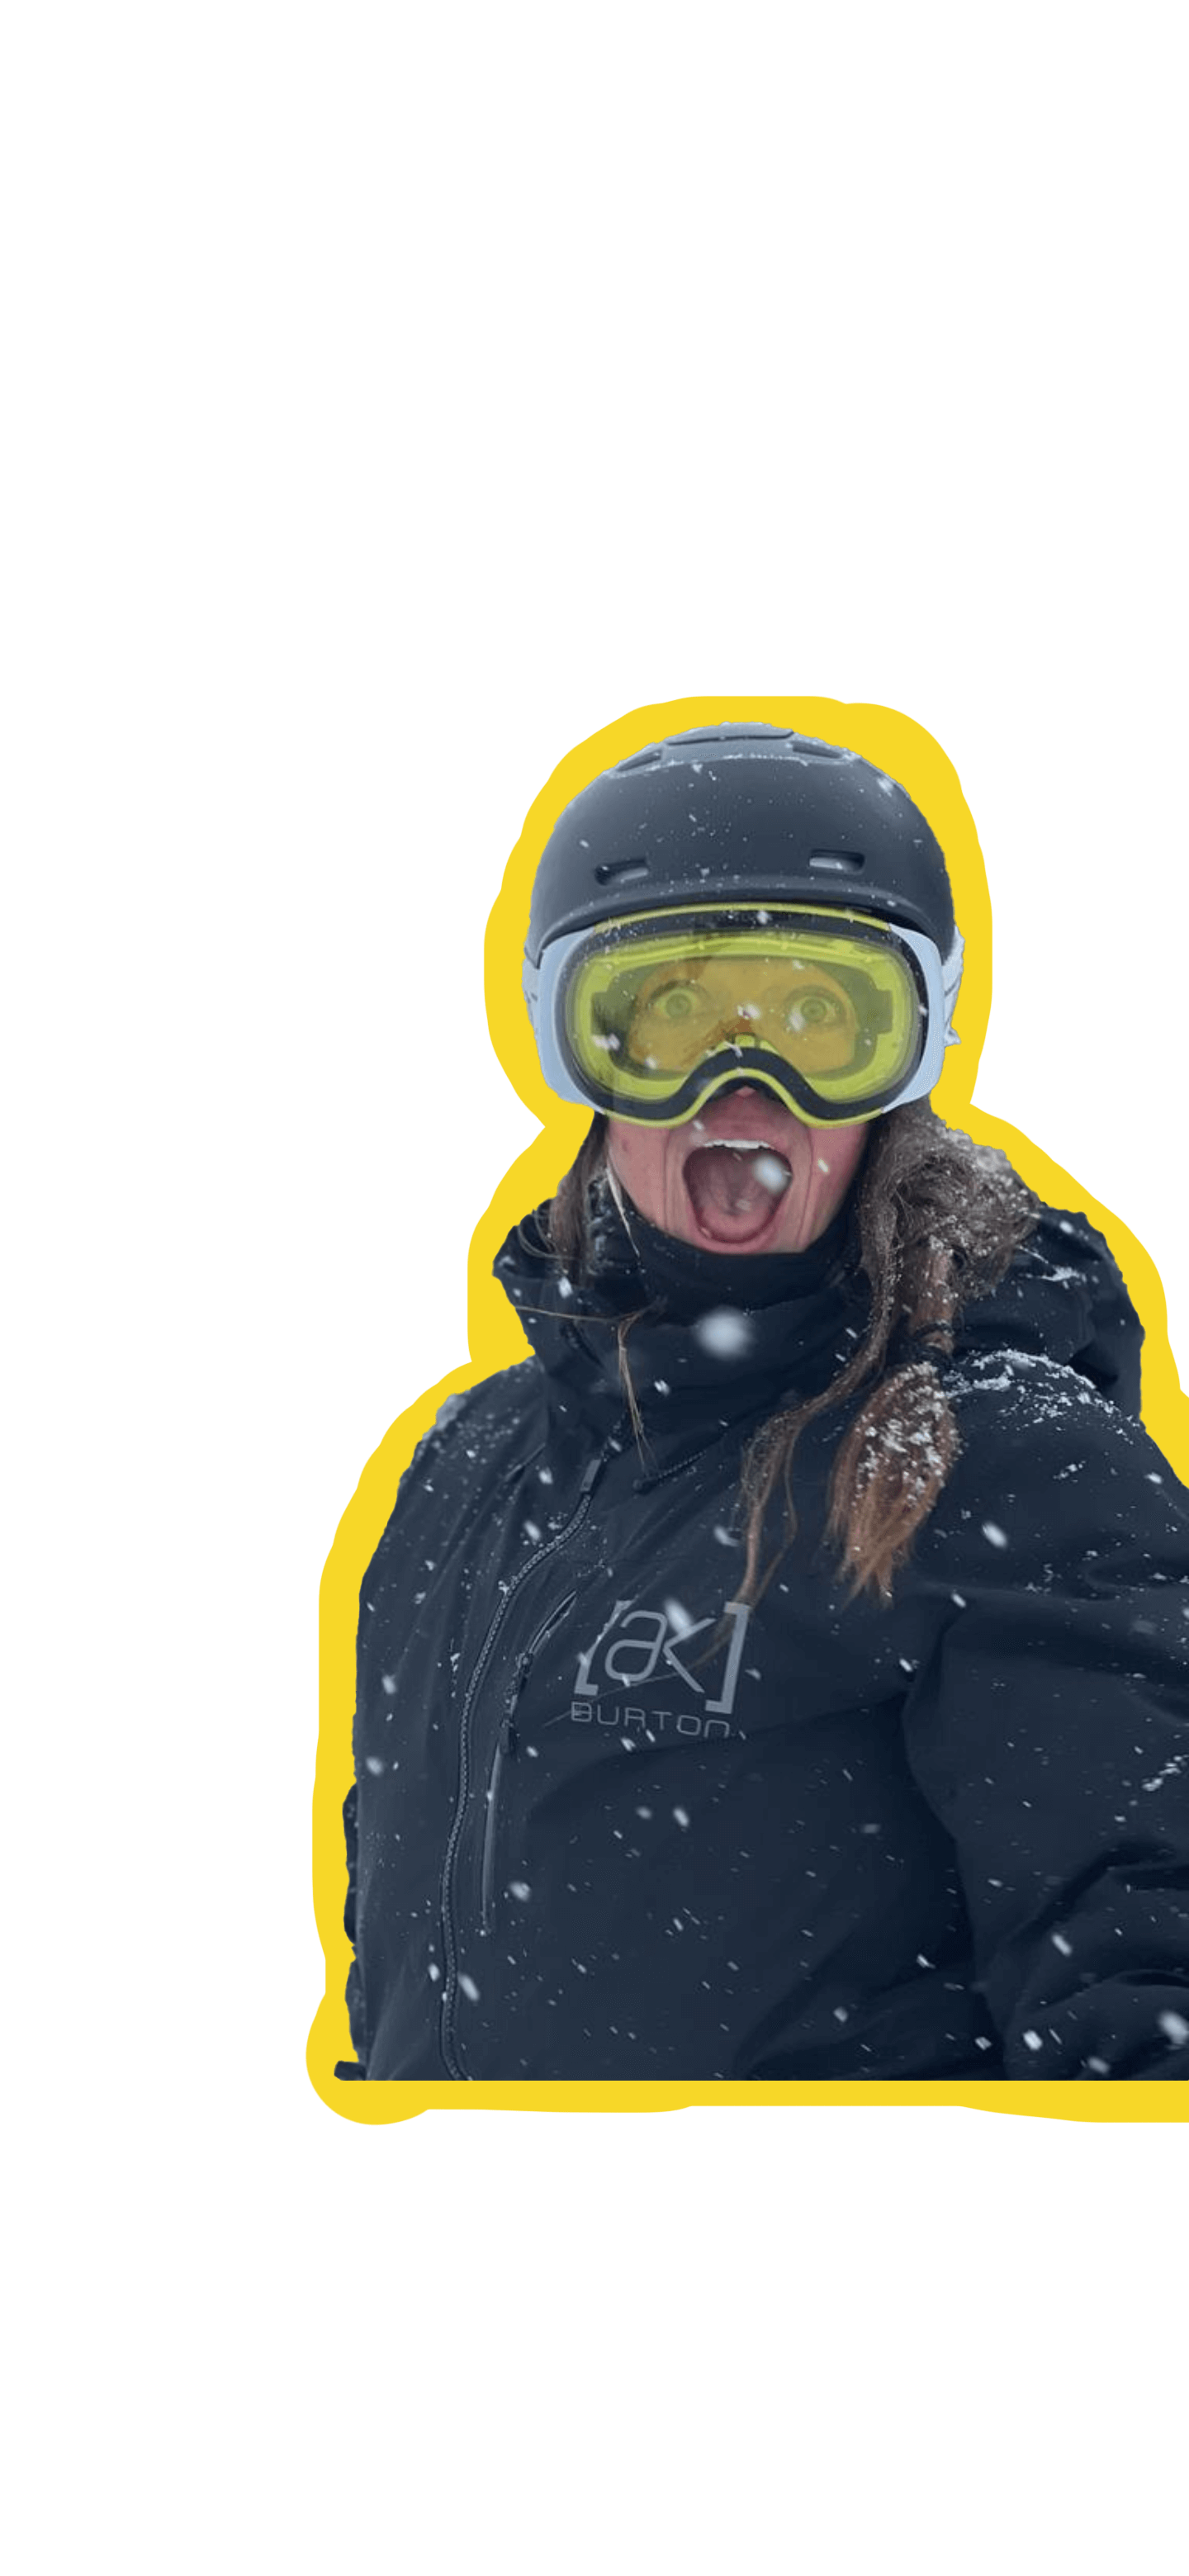 Elizabeth Reid making a silly face in snowboard gear.